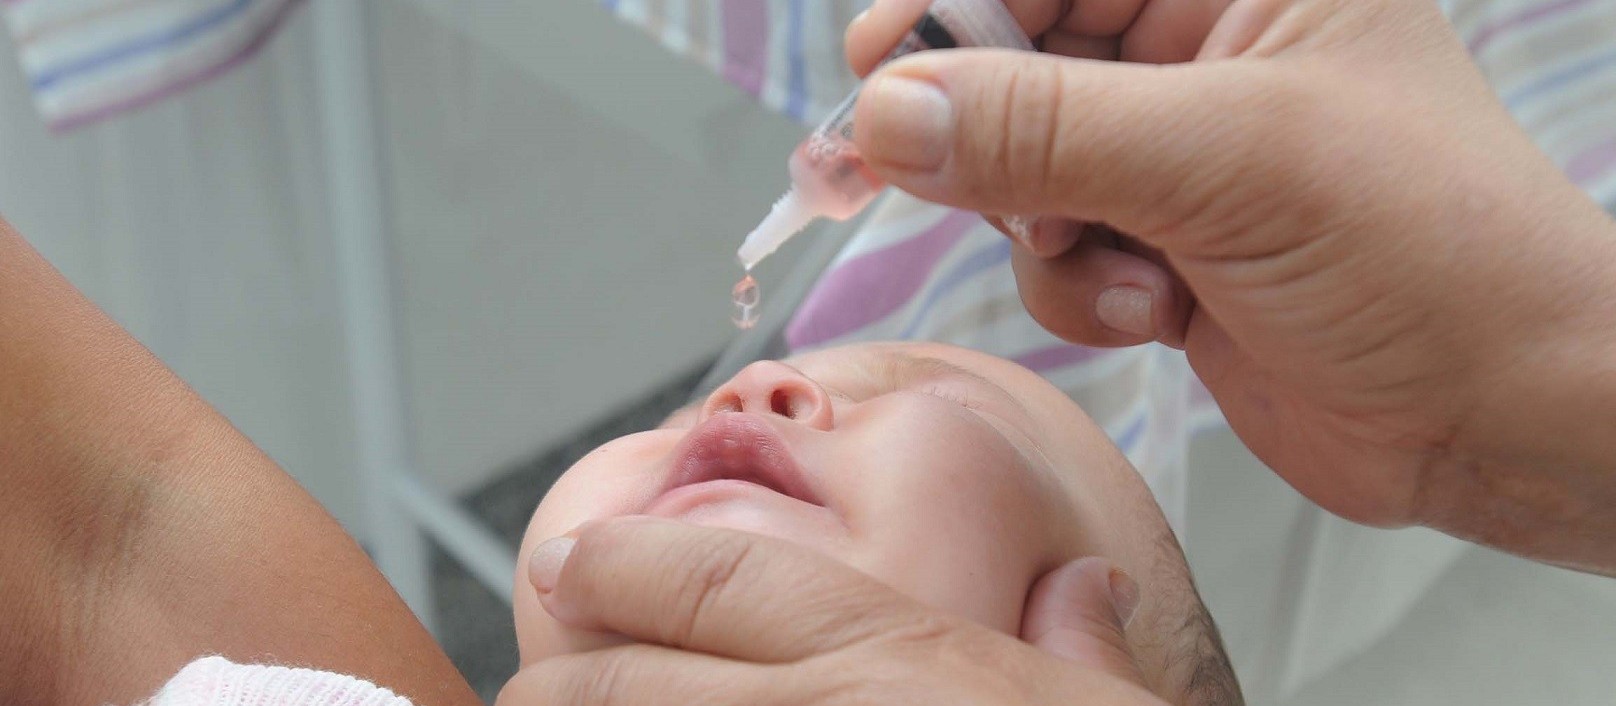 Na próxima semana deve começar a campanha nacional de vacinação contra poliomielite